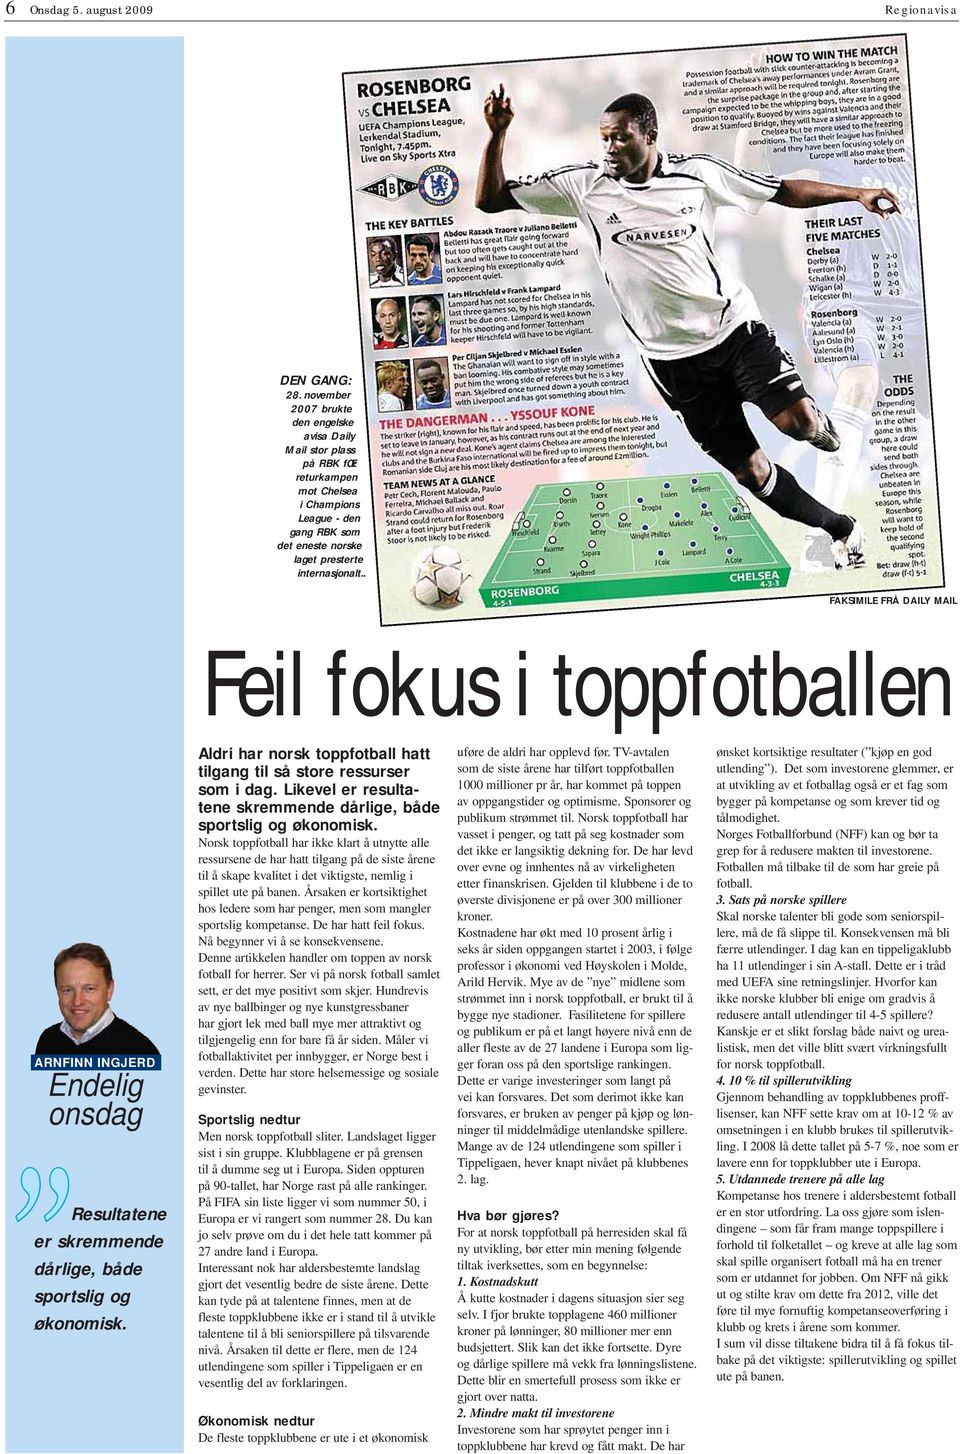 . FM FÅ Y M Feil fokus i toppfotballen F J ndelig onsdag esultatene er skremmende dårlige, både sportslig og økonomisk. ldri har norsk toppfotball hatt tilgang til så store ressurser som i dag.